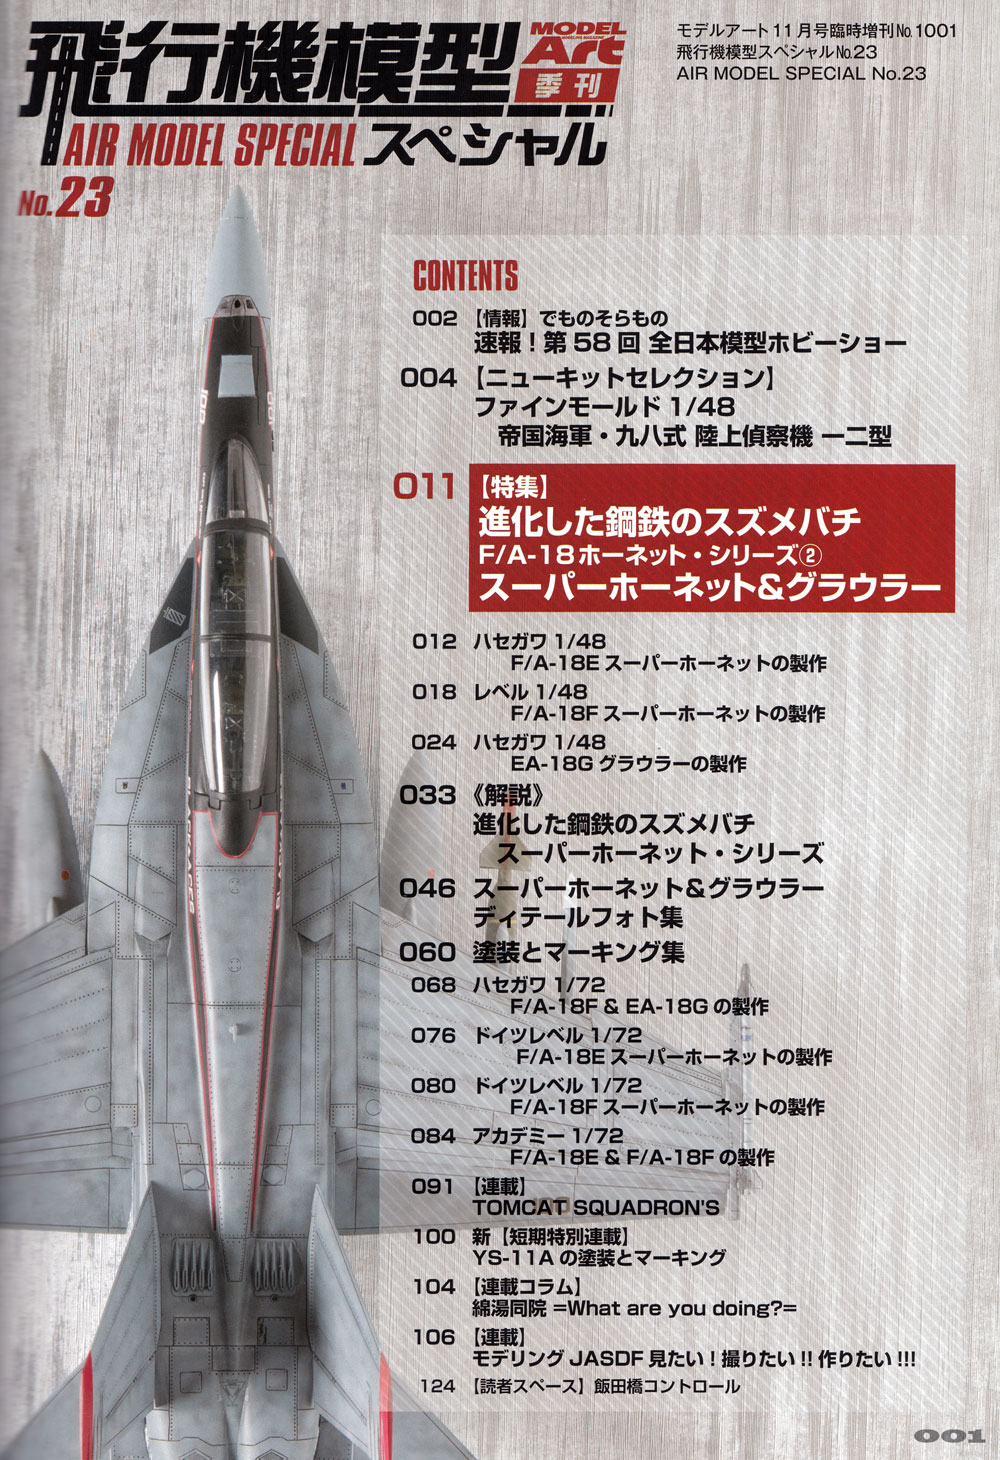 飛行機模型スペシャル 23 進化した鋼鉄のスズメバチ F/A-18 ホーネット シリーズ 2 本 (モデルアート 飛行機模型スペシャル No.023) 商品画像_1